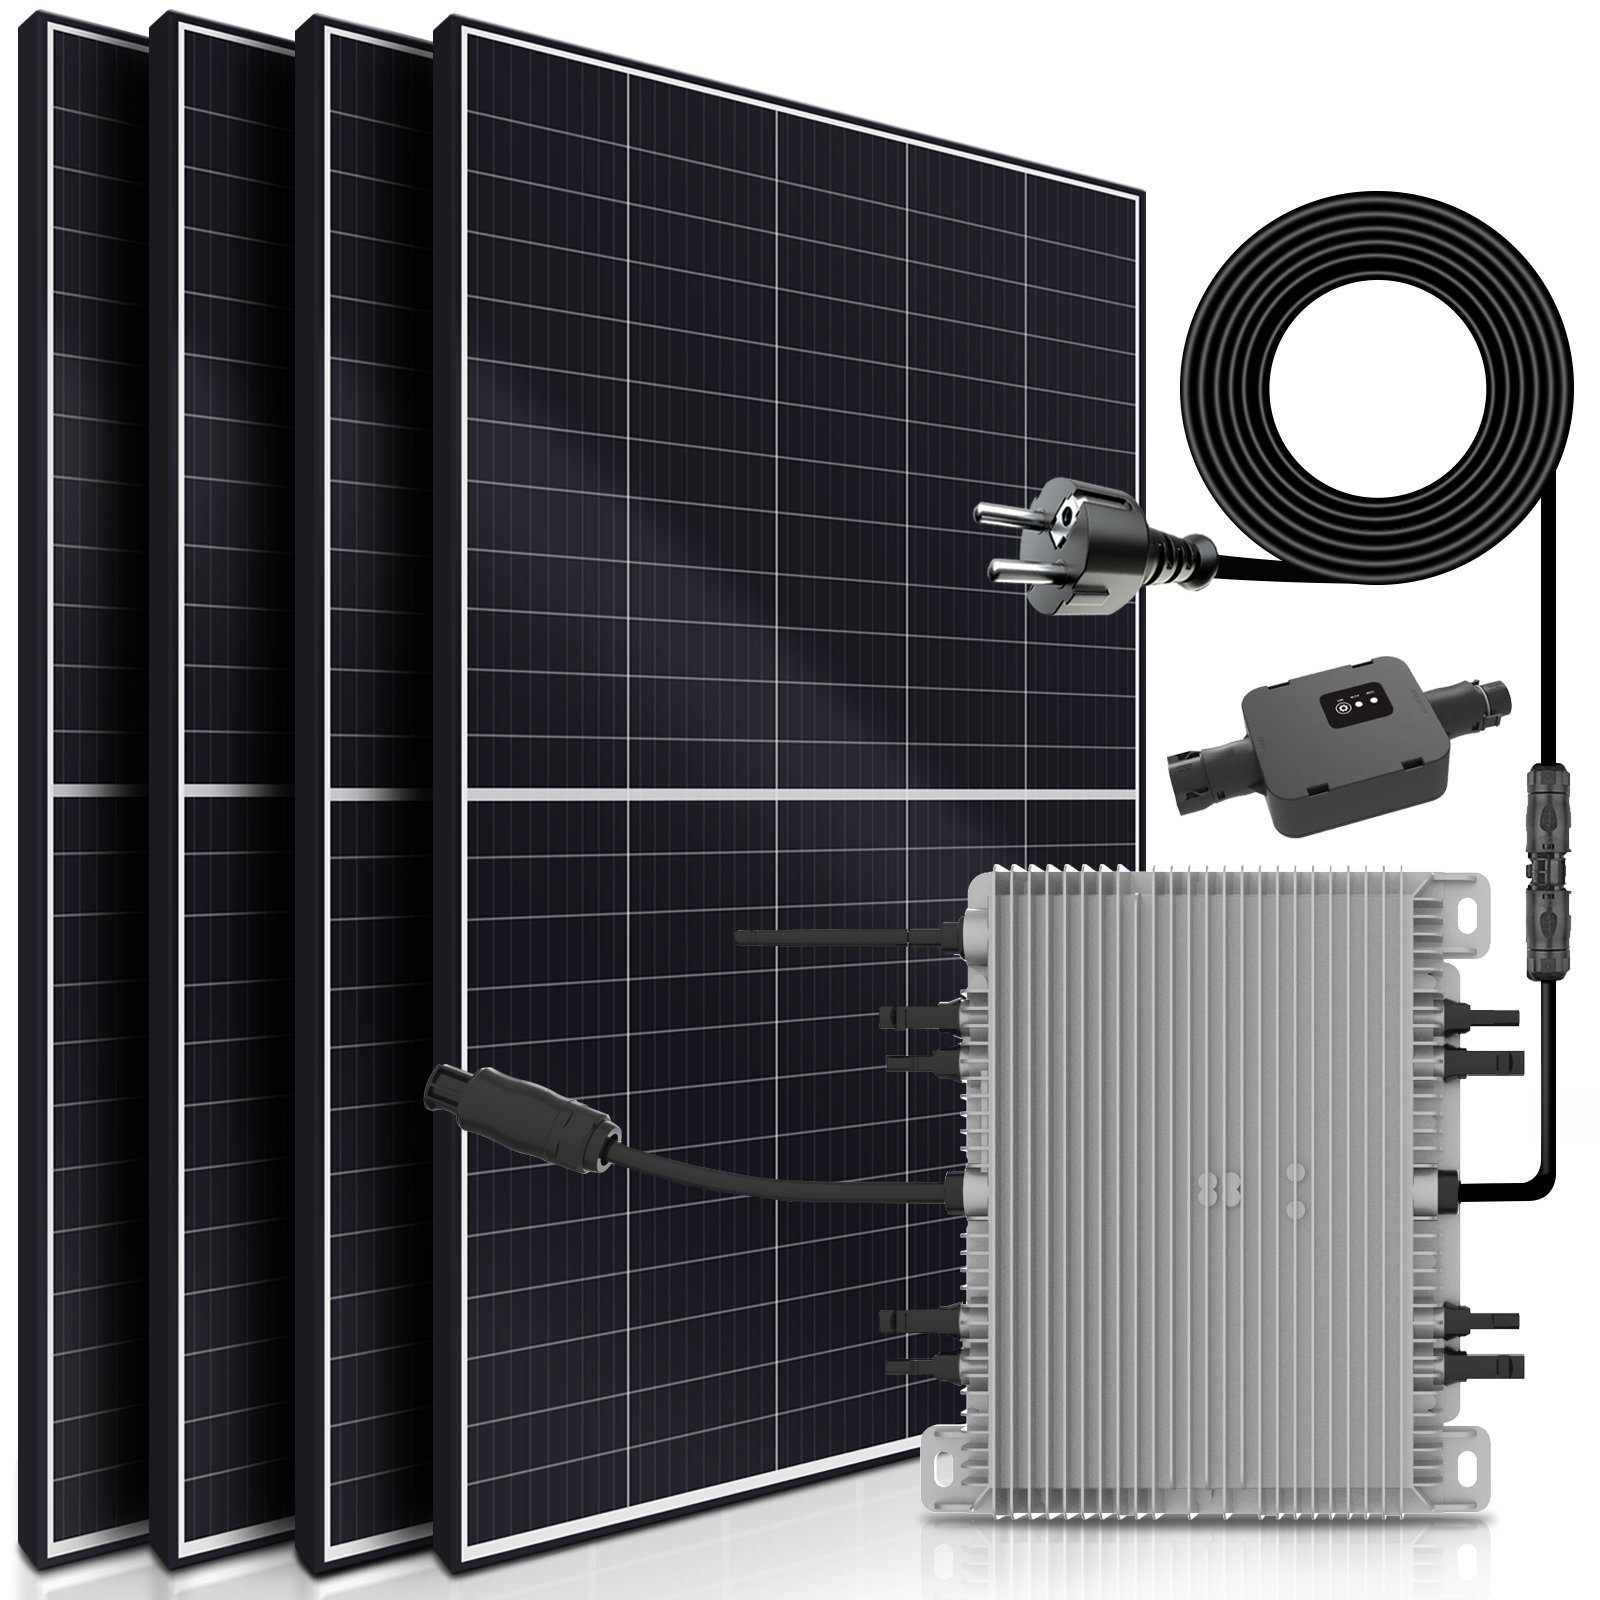 https://i.otto.de/i/otto/238a5469-a9bd-451b-a9a3-fc43332164af/sunniva-solaranlage-balkonkraftwerk-2200w-2000-00-w-monokristallin-deye-wechselrichter-drosselbar-auf-600w-oder-800w-solaranlage-komplettset-mit-5m-anschlusskabel-fuer-schuko-steckdose-balkon-mini-pv-anlage-mit-wifi-app-und-stromerzeugung-messung-upgrade-genehmigungsfrei-steckerfertig.jpg?$formatz$